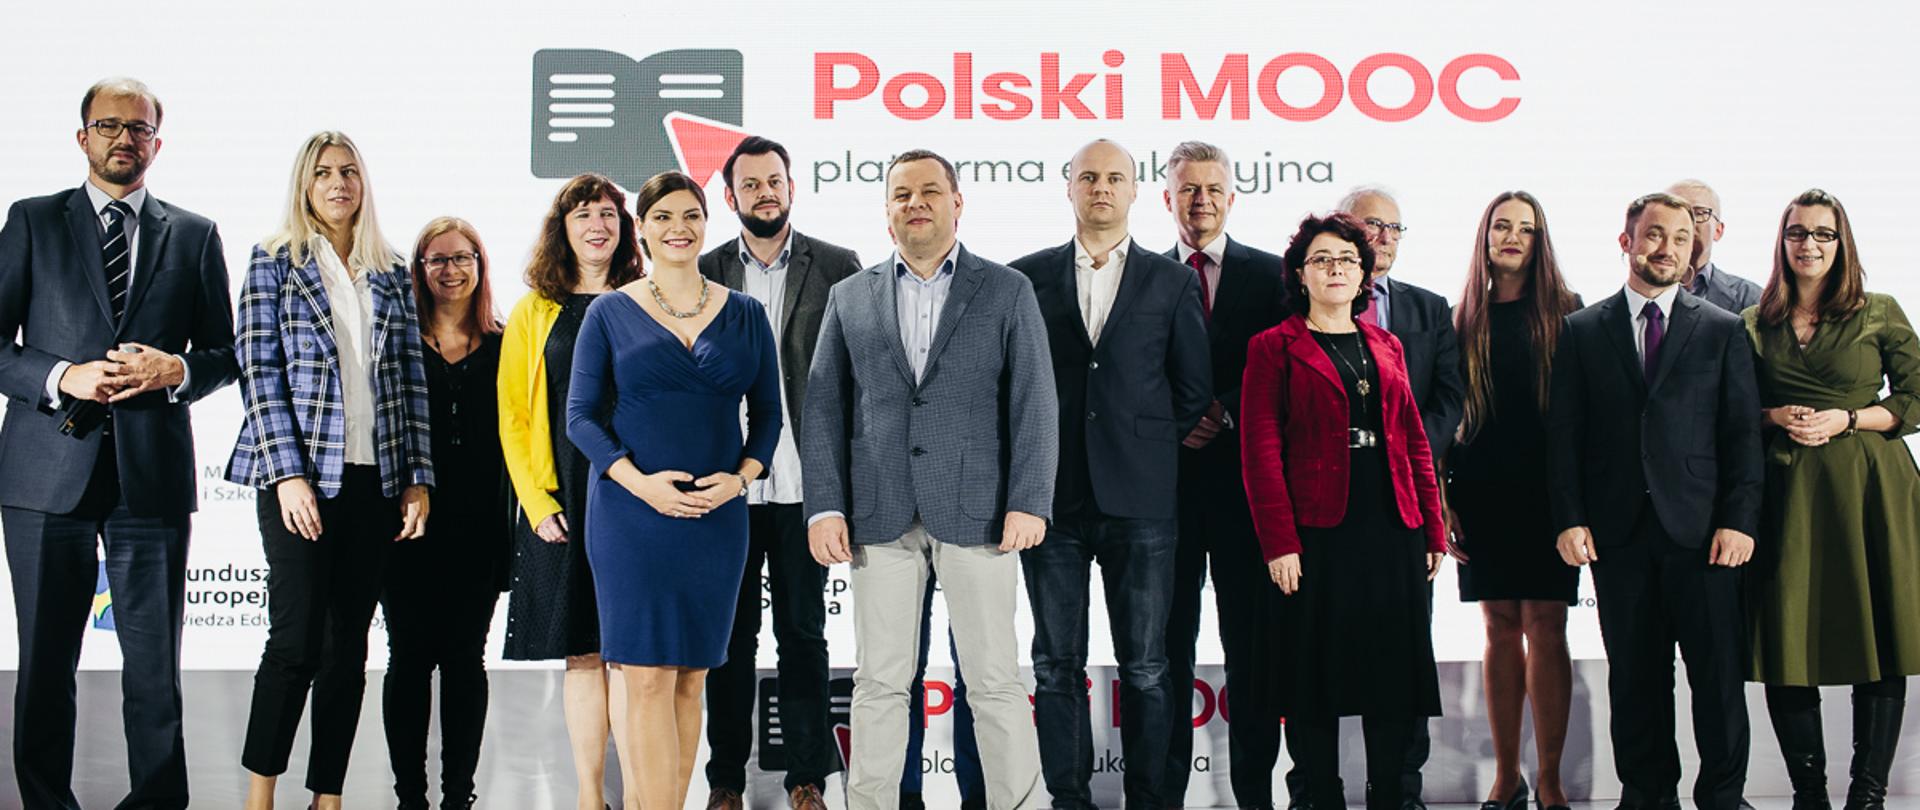 Na zdjęciu widać uczestników wydarzenia, którzy stoją na scenie - m.in. ministra Piotra Dardzińskiego. Na scenie wyświetla się napis: Polski MOOC.